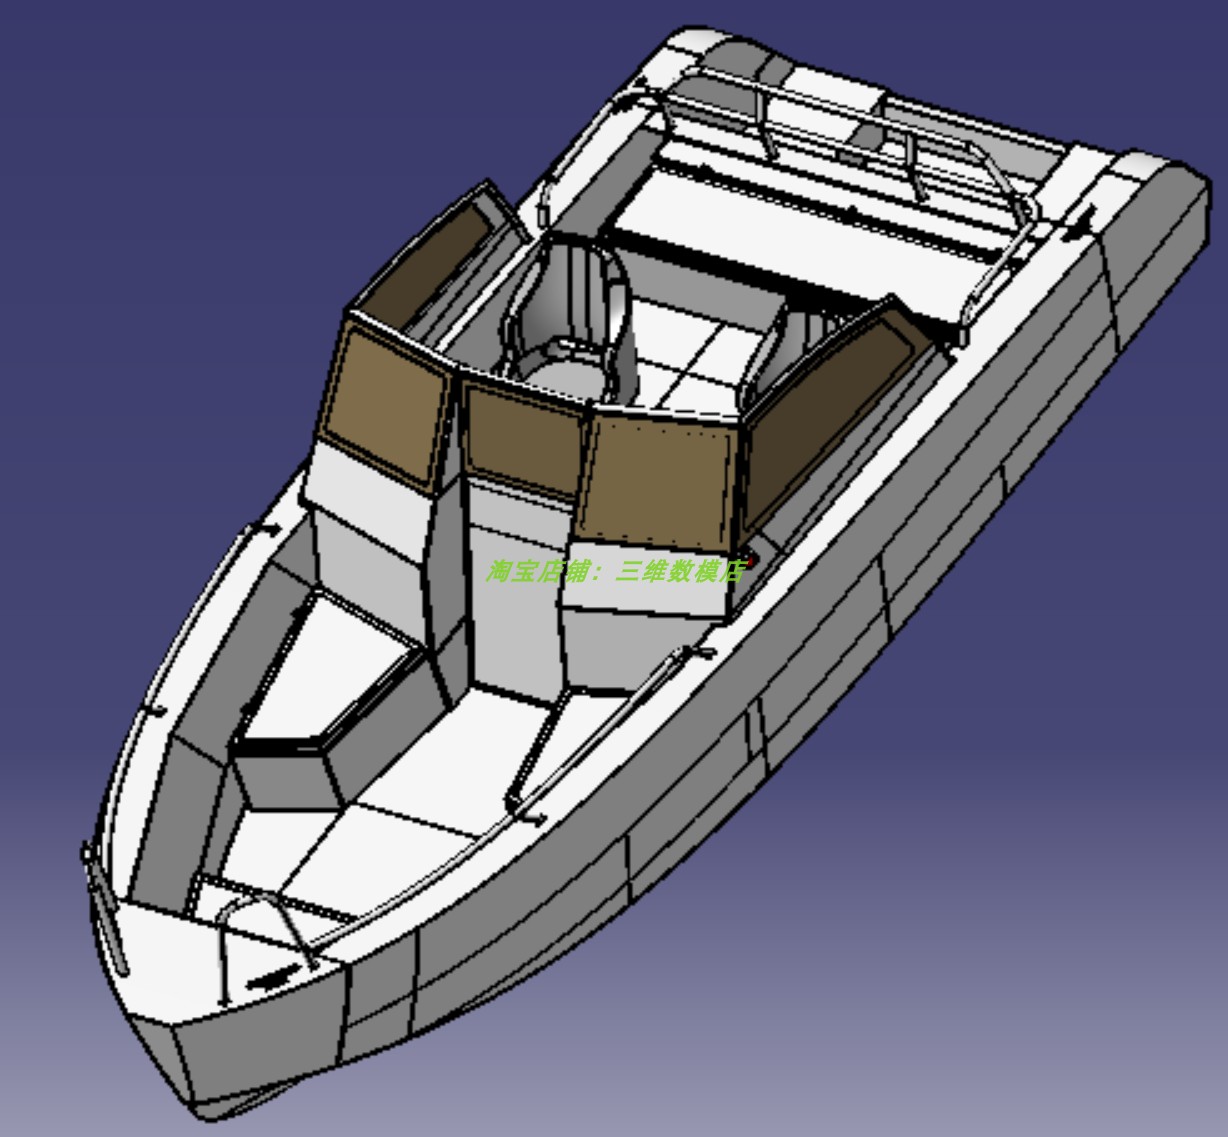 5.5米m铝合金小快艇双座椅游船3D三维几何数模型垂钓鱼渔船巡逻船